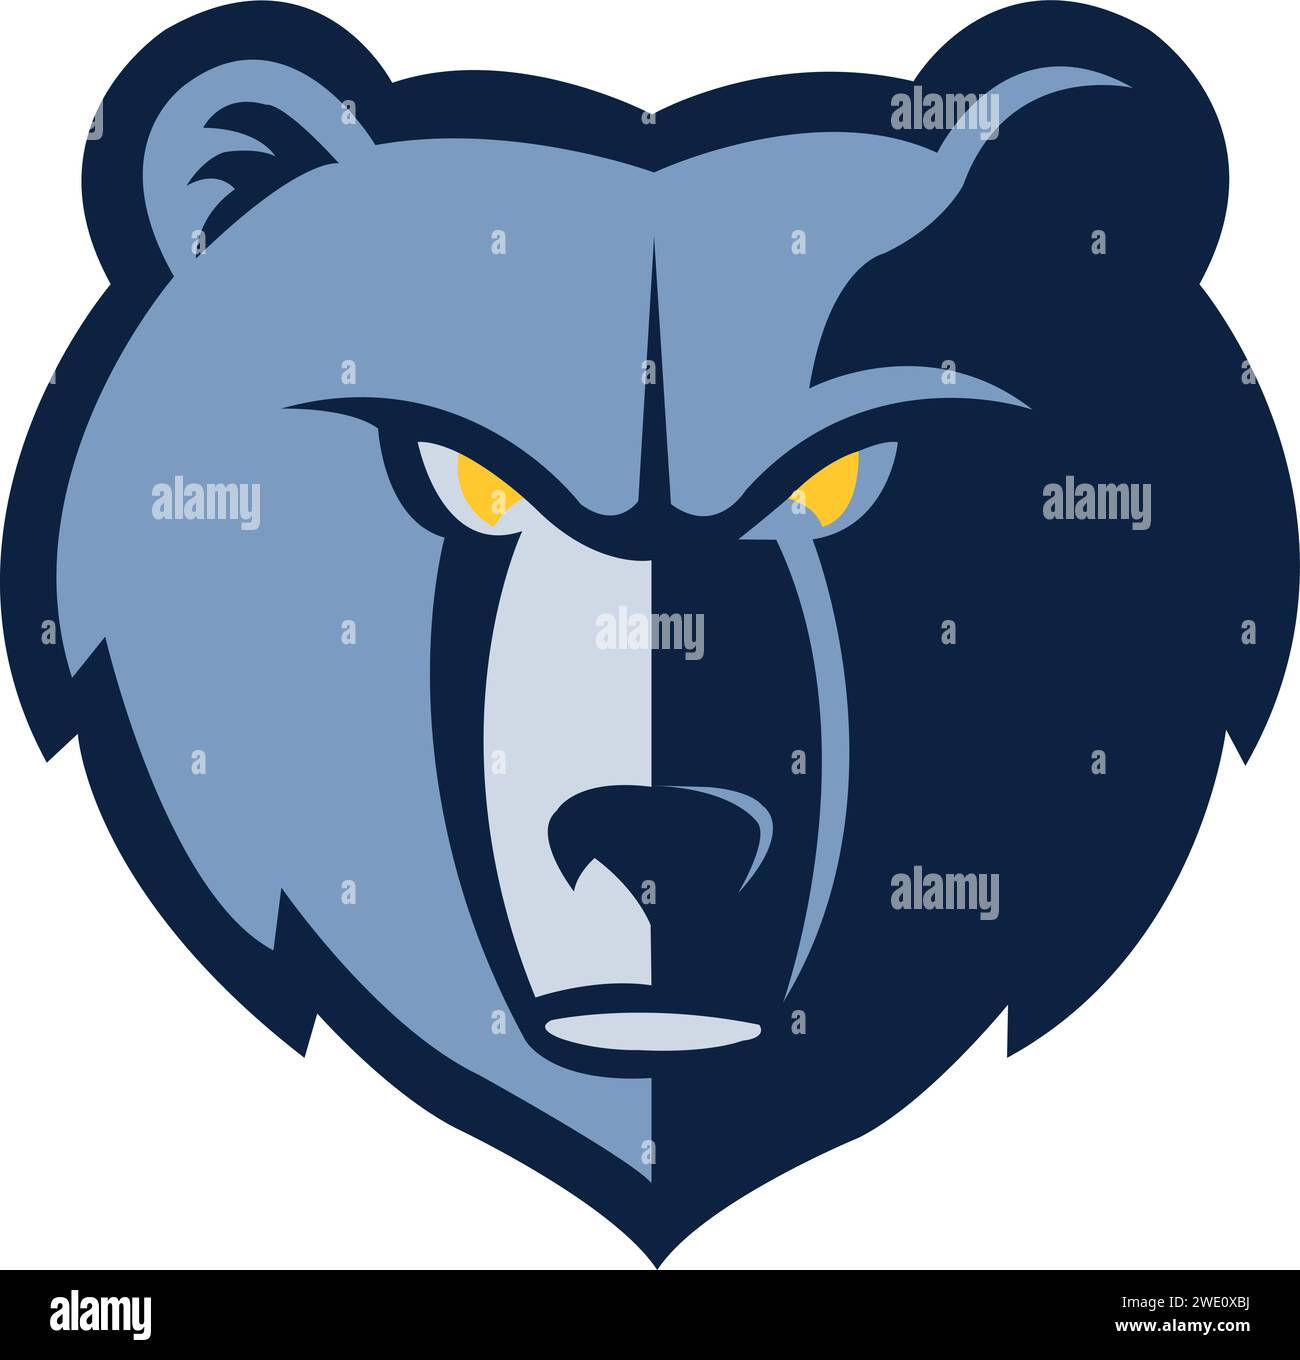 Il logo Memphis Grizzlies ruggisce con orgoglio, incarnando lo spirito feroce della squadra dentro e fuori dal campo Illustrazione Vettoriale